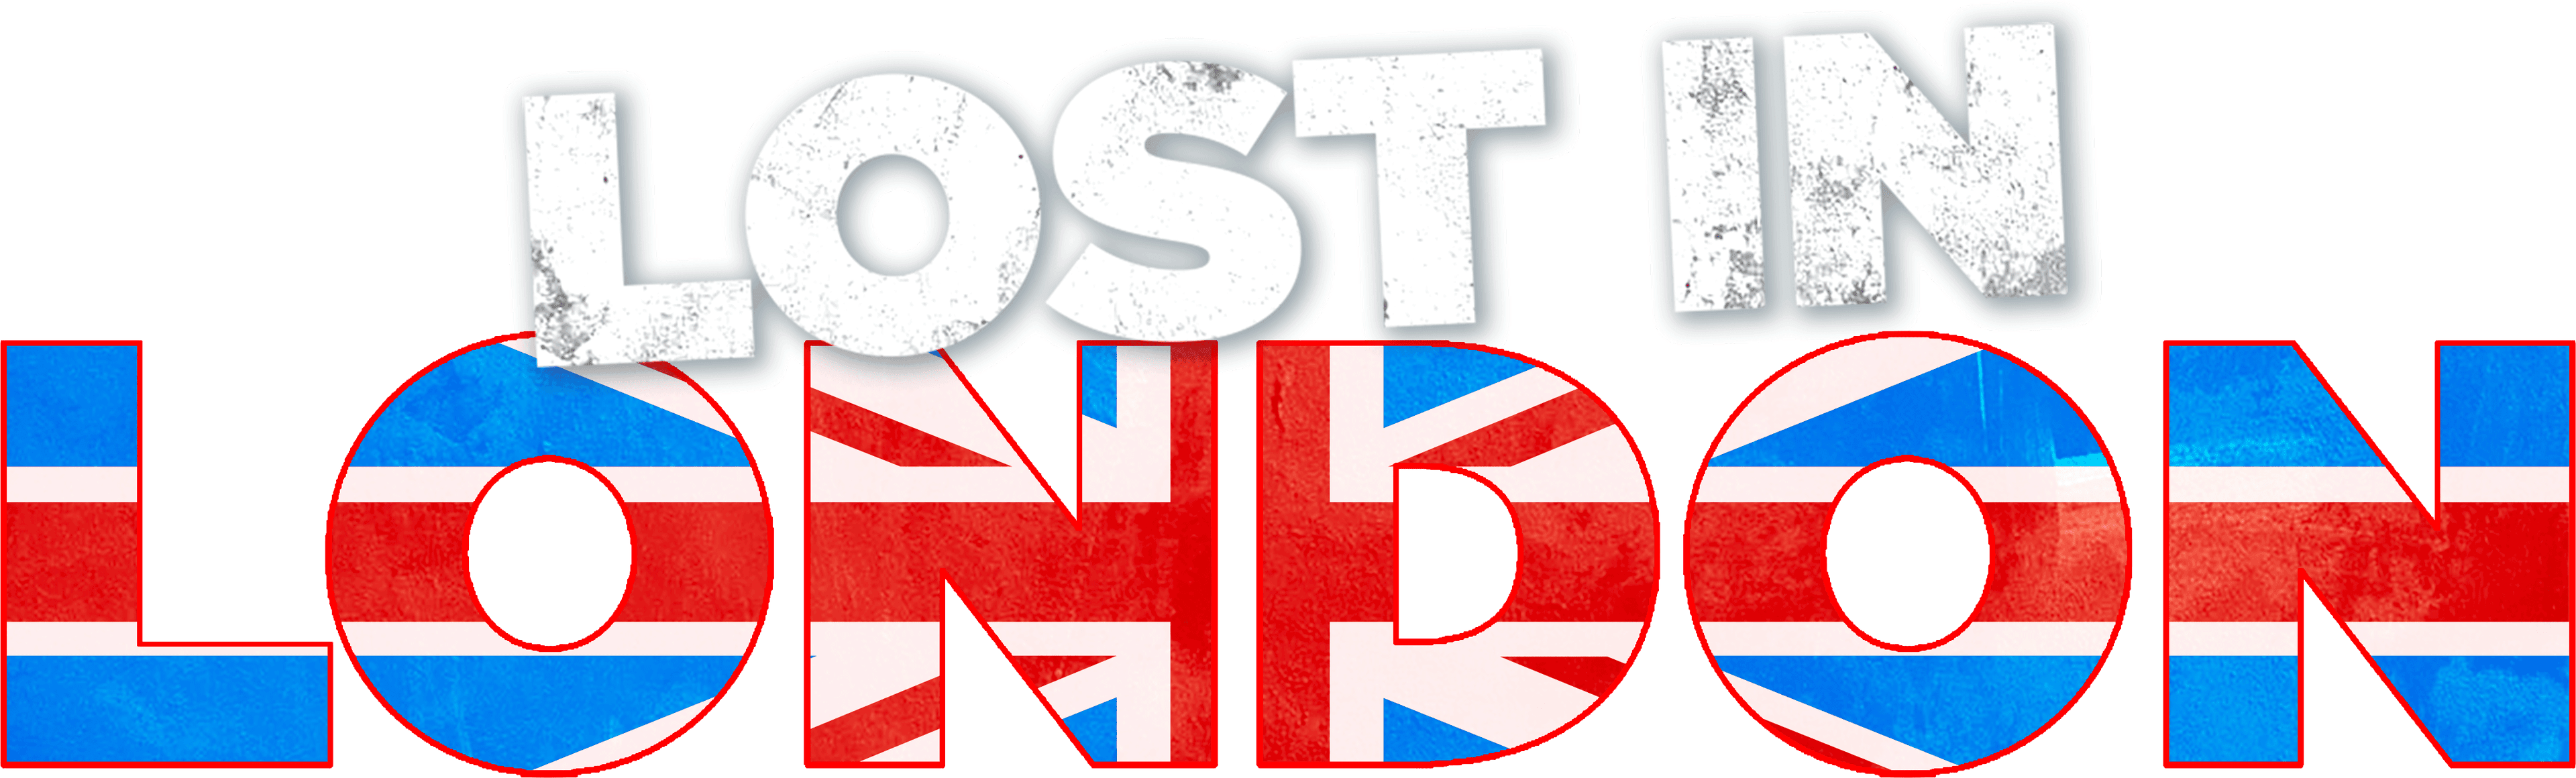 Lost in London logo